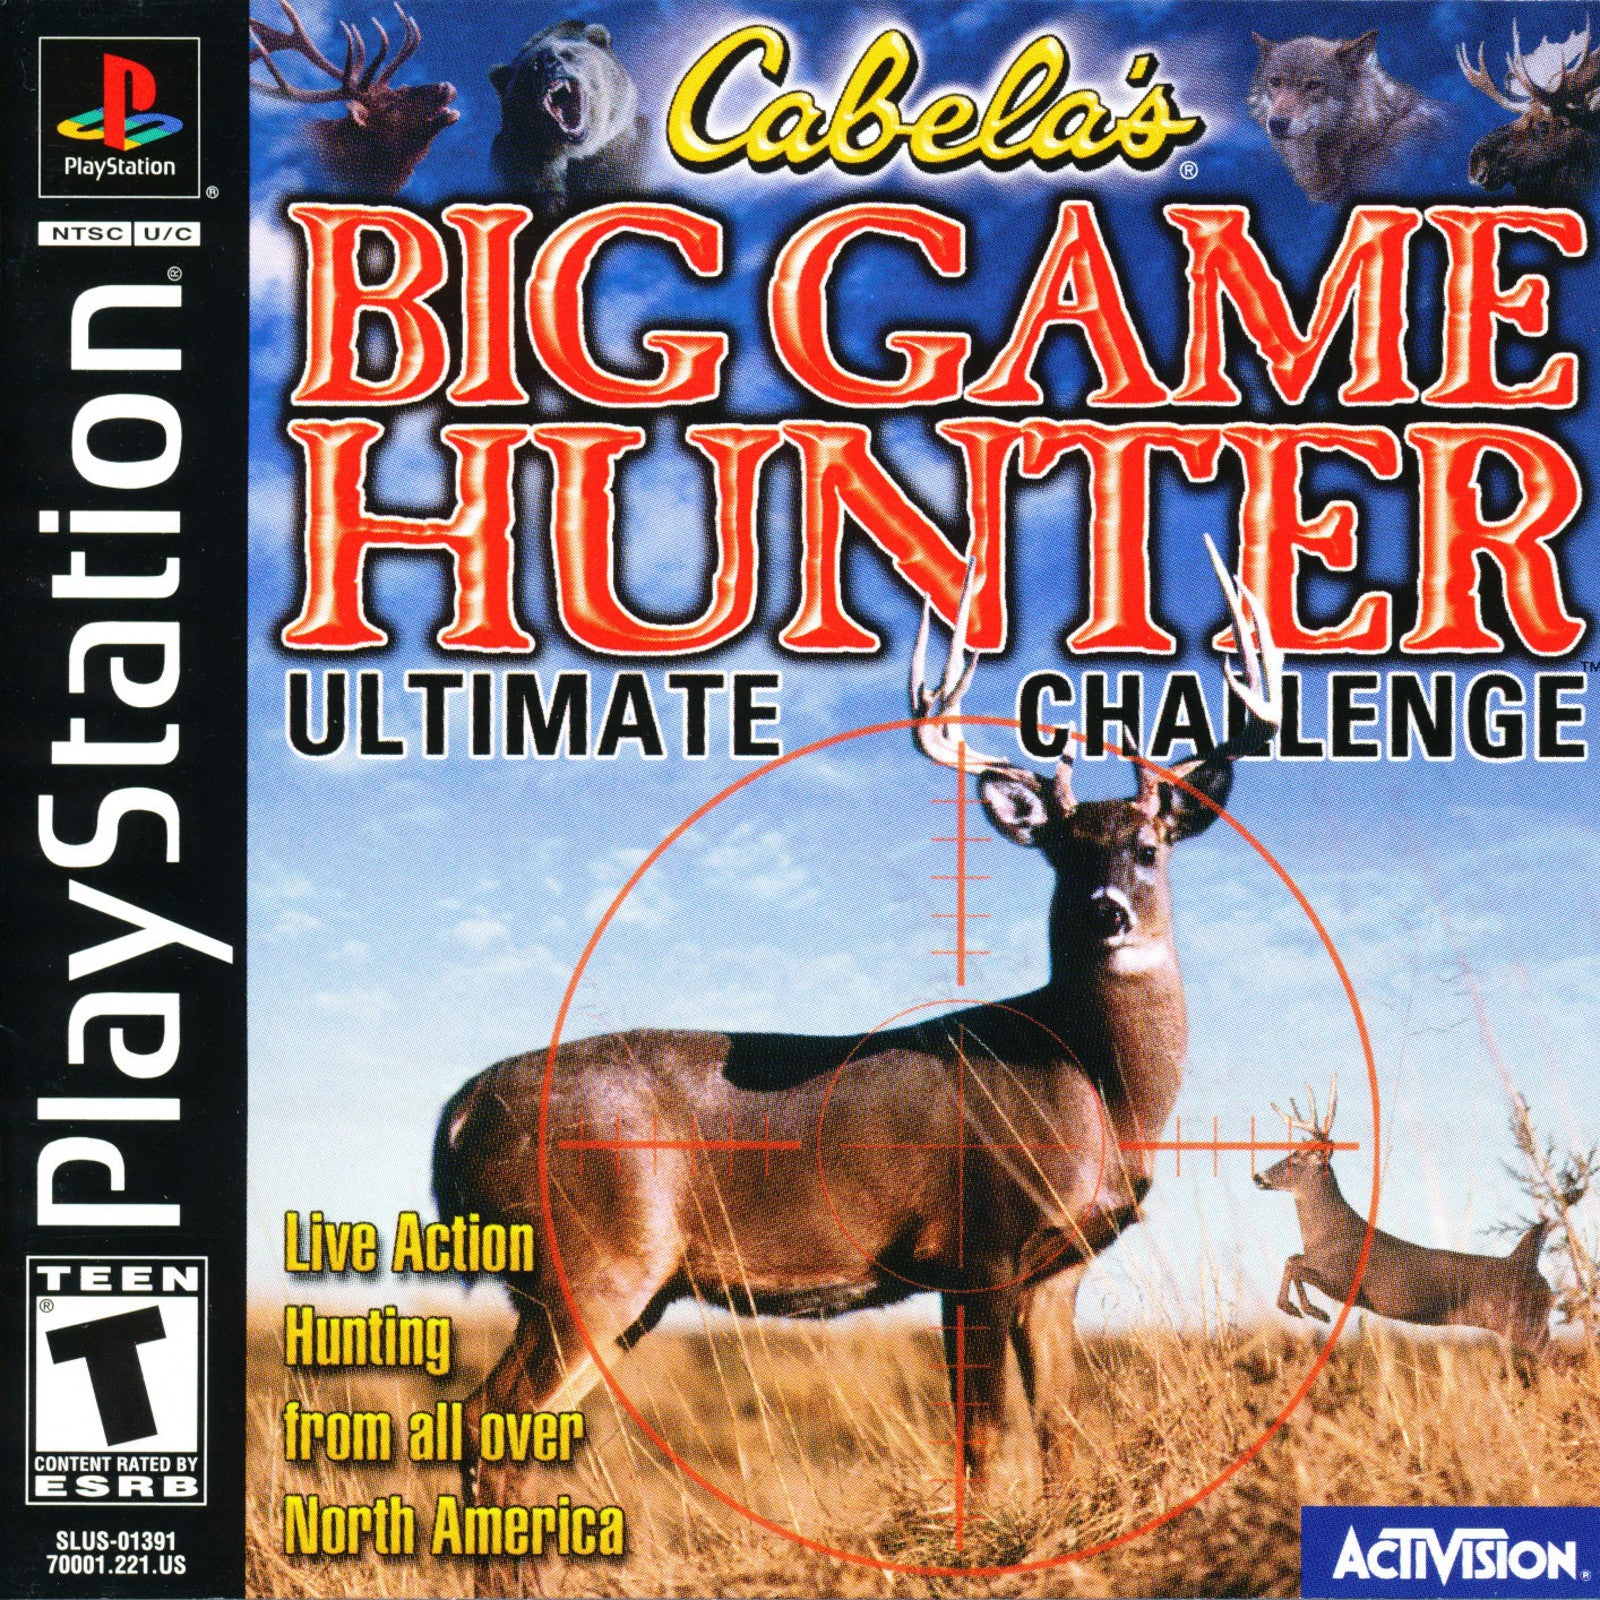 Cabela's Big Game Hunter - PlayStation 2